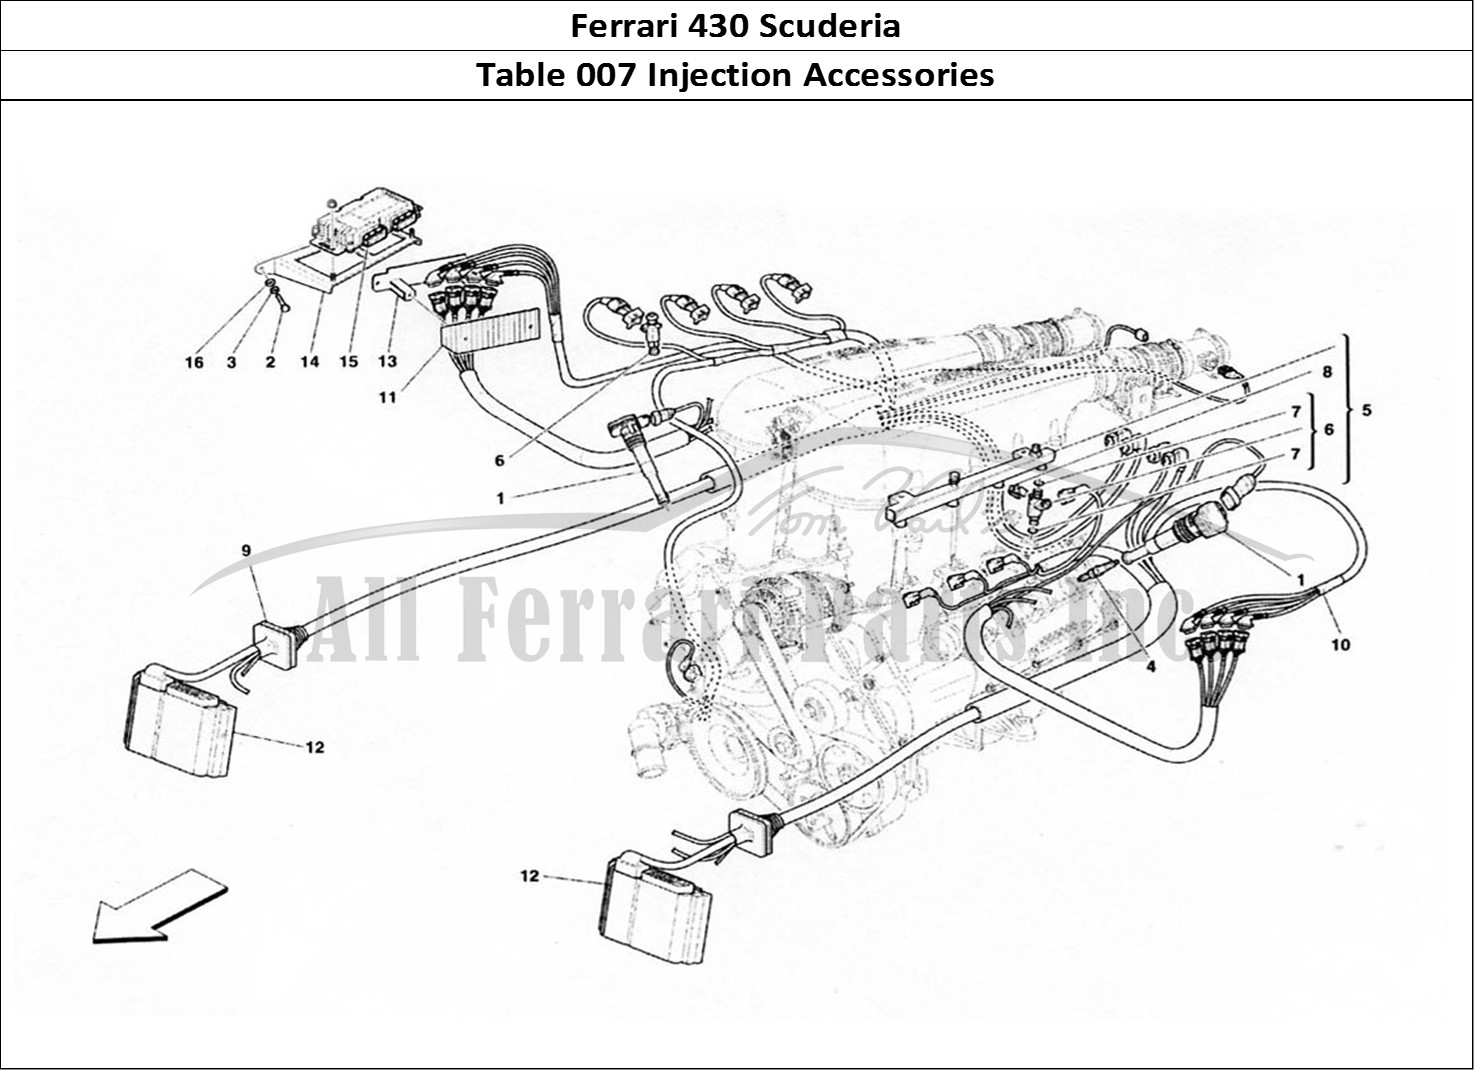 Ferrari Parts Ferrari 430 Scuderia Page 007 Injection & Accessories